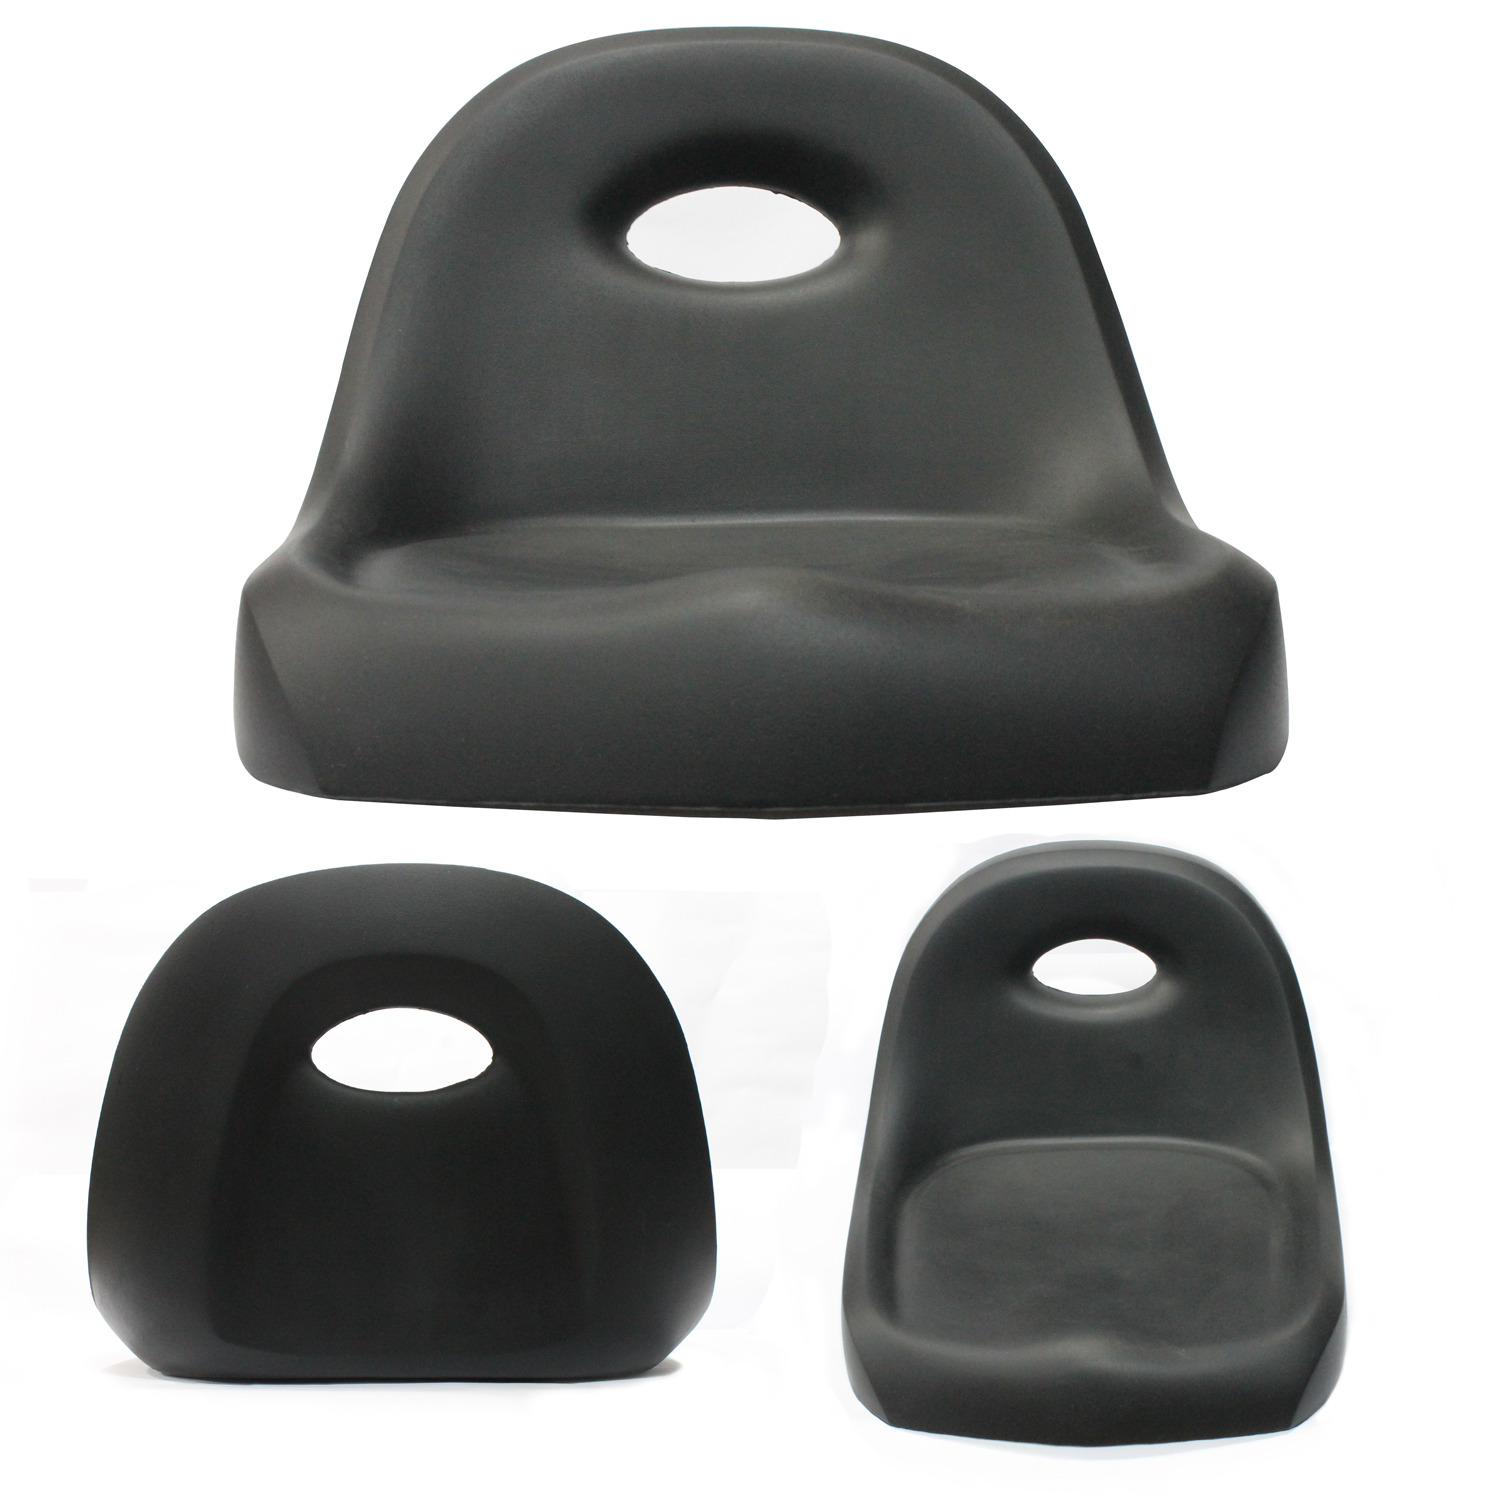 Polyurethan Rücken Unterstützung Kissen für Auto, orthopädische Kissen, Rückenlehne Kissen, Büro-Stuhl Rücken stützen Kissen, PU High Density Stuhl Kissen